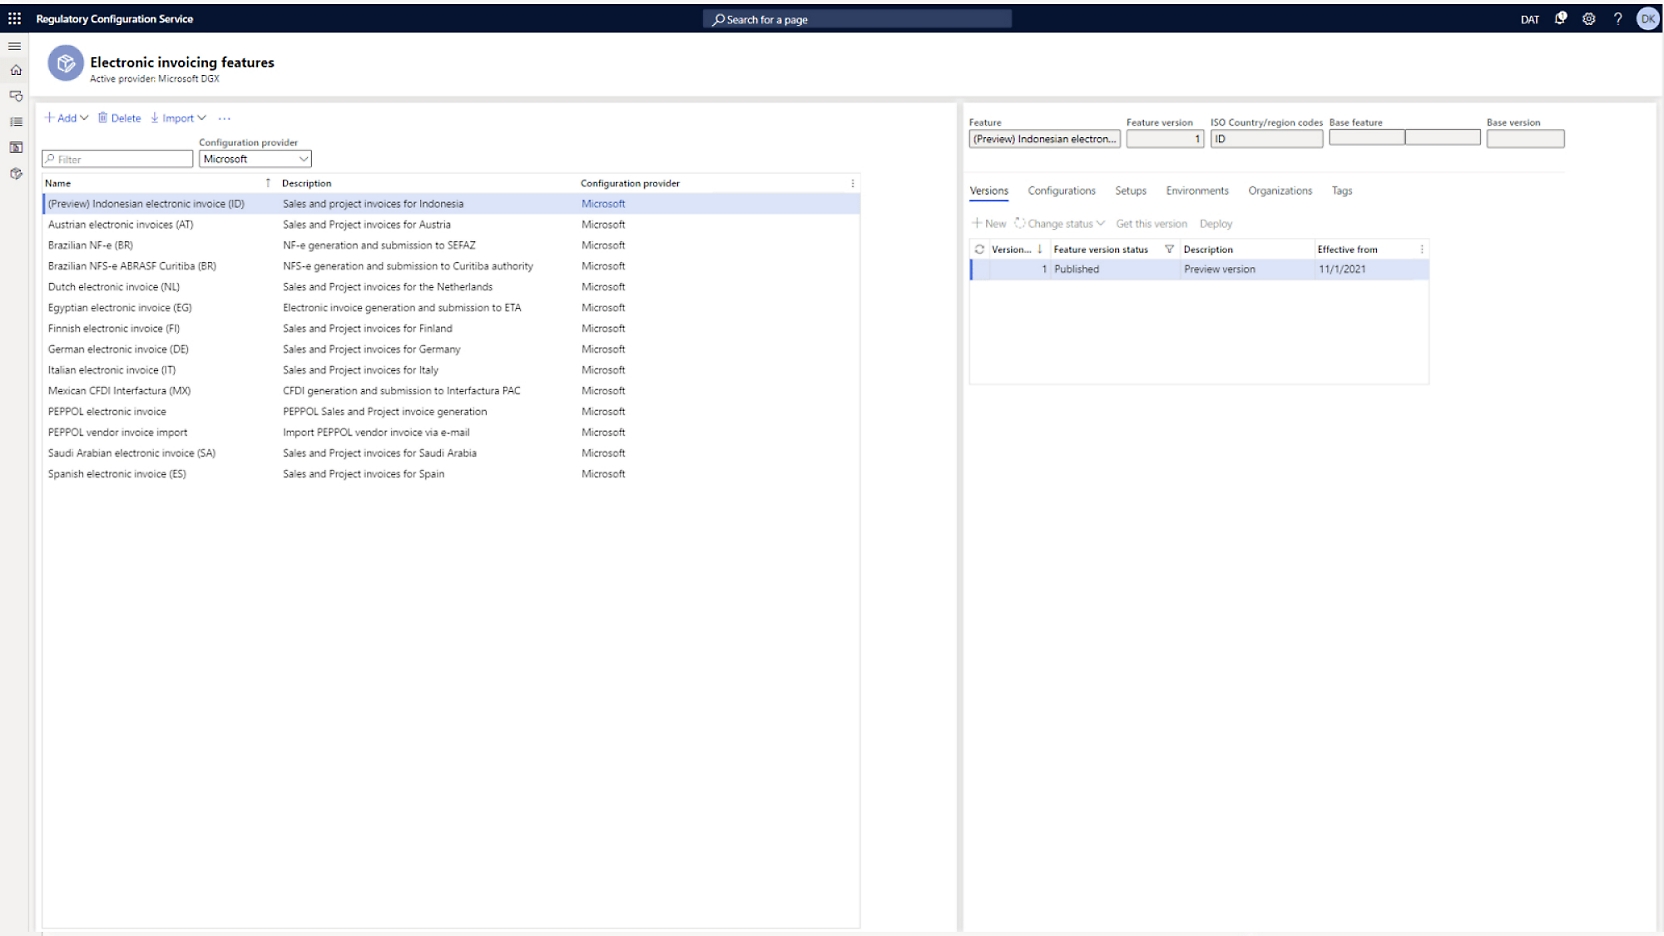 Et vindu som viser ulike tjenester i listetype, med informasjon på høyre side.